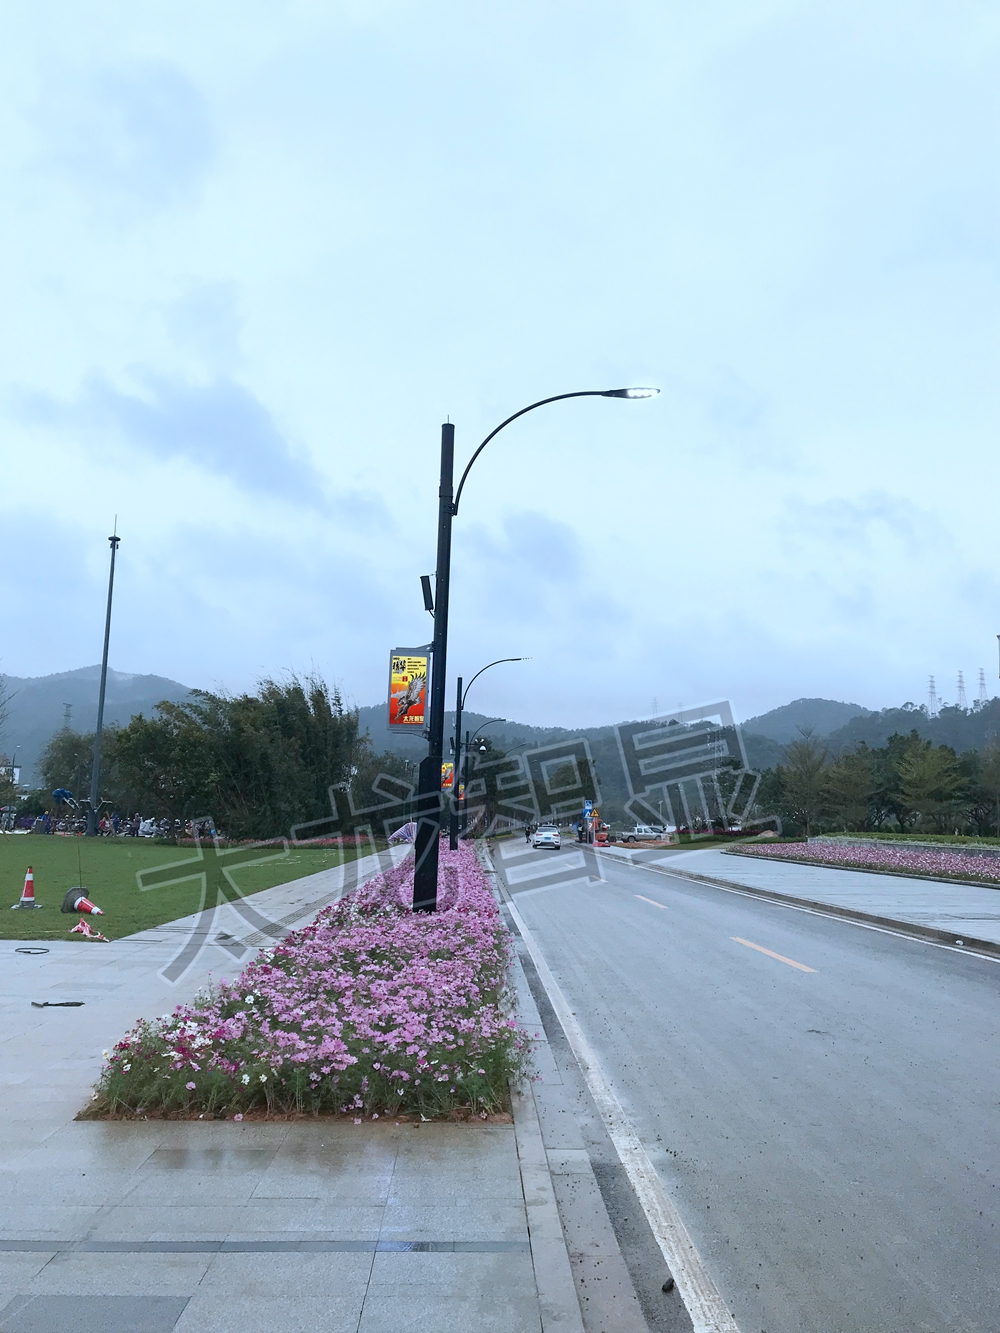 太龙智显广州从化世界生态设计小镇LED灯杆屏 (20)_副本.jpg